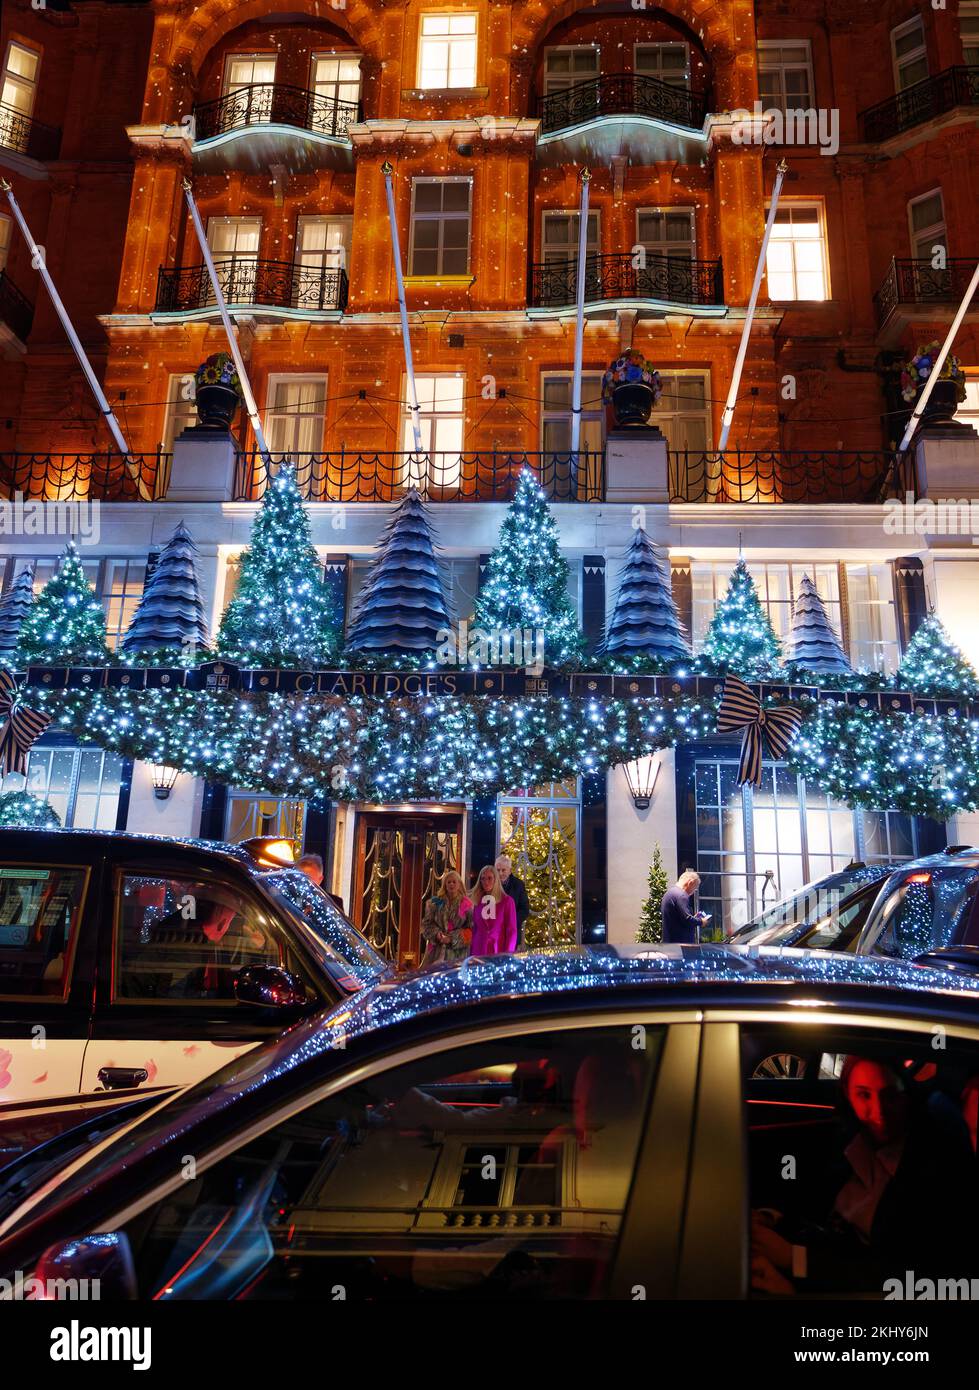 L'iconico hotel Claridge mostra la facciata di Natale. I taxi aspettano fuori dall'albergo mentre le decorazioni si riflettono sul parabrezza. Foto Stock